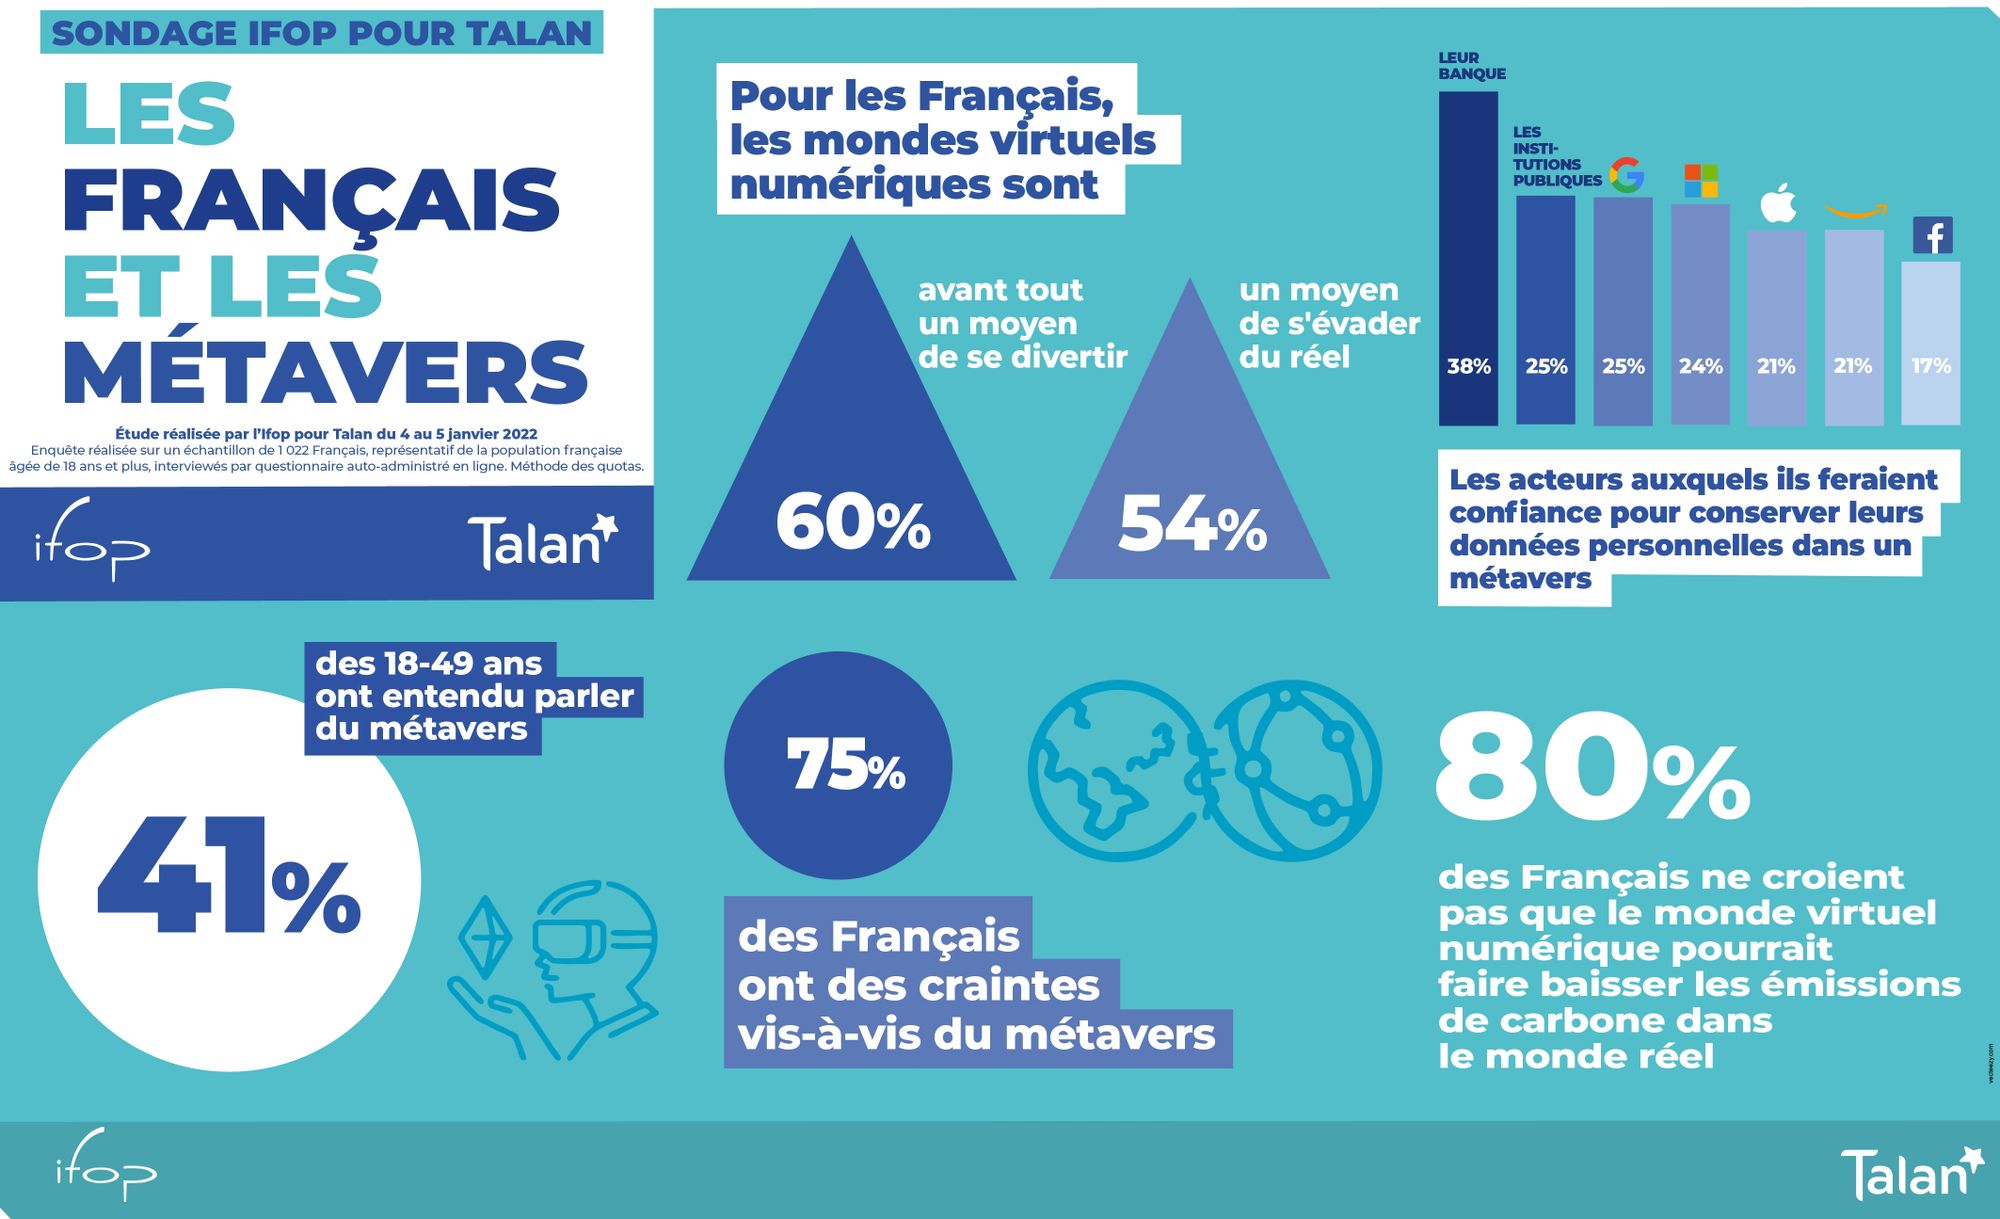 Sondage Ifop pour Talan - “Les Français et les métavers”